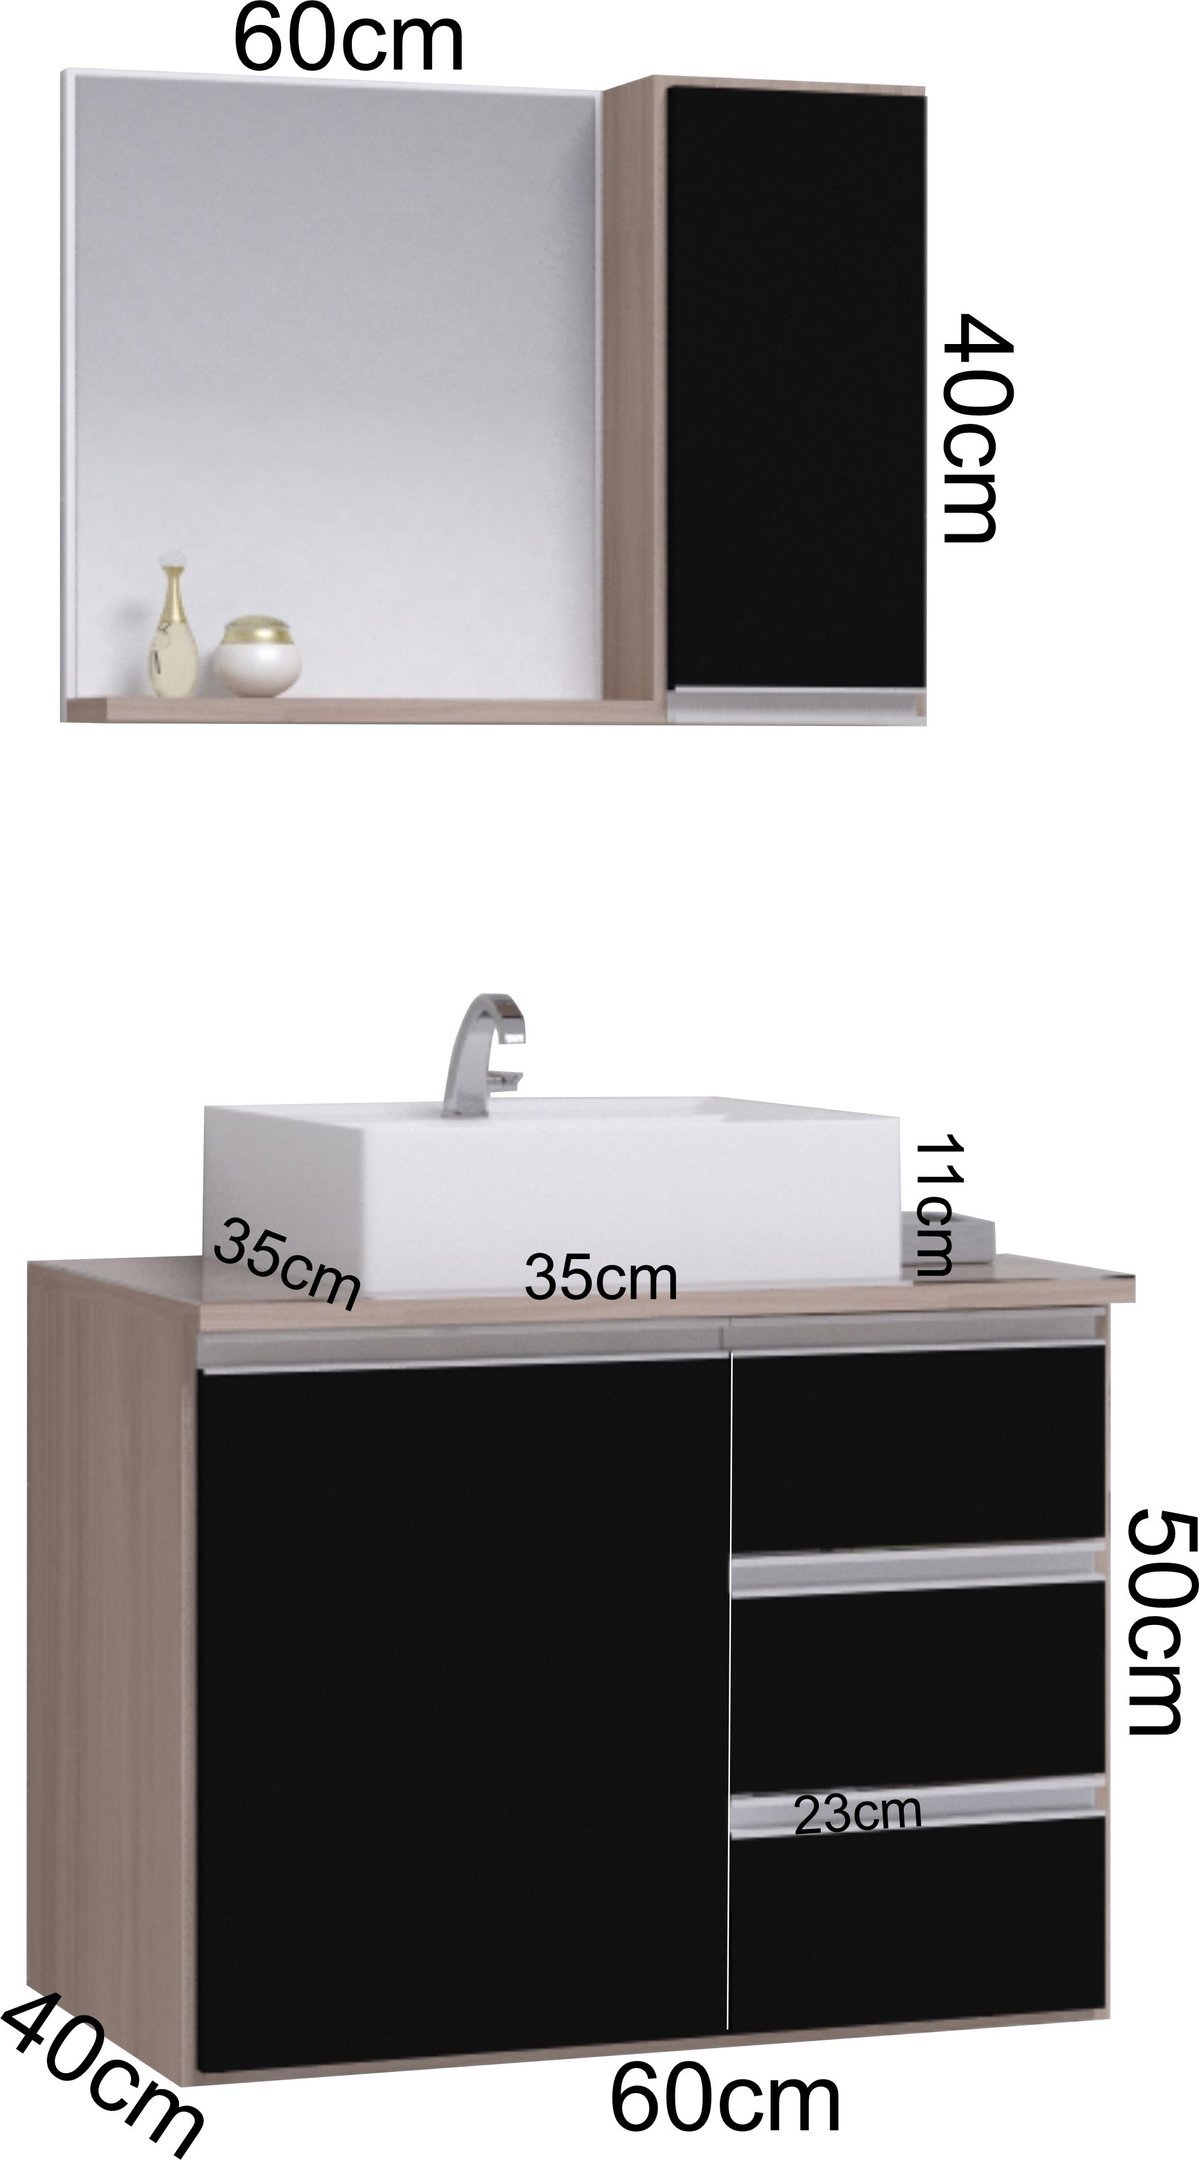 Conjunto Gabinete Banheiro Completo Prisma 60cm - Madeirado / Preto COM TAMPO VIDRO - 3